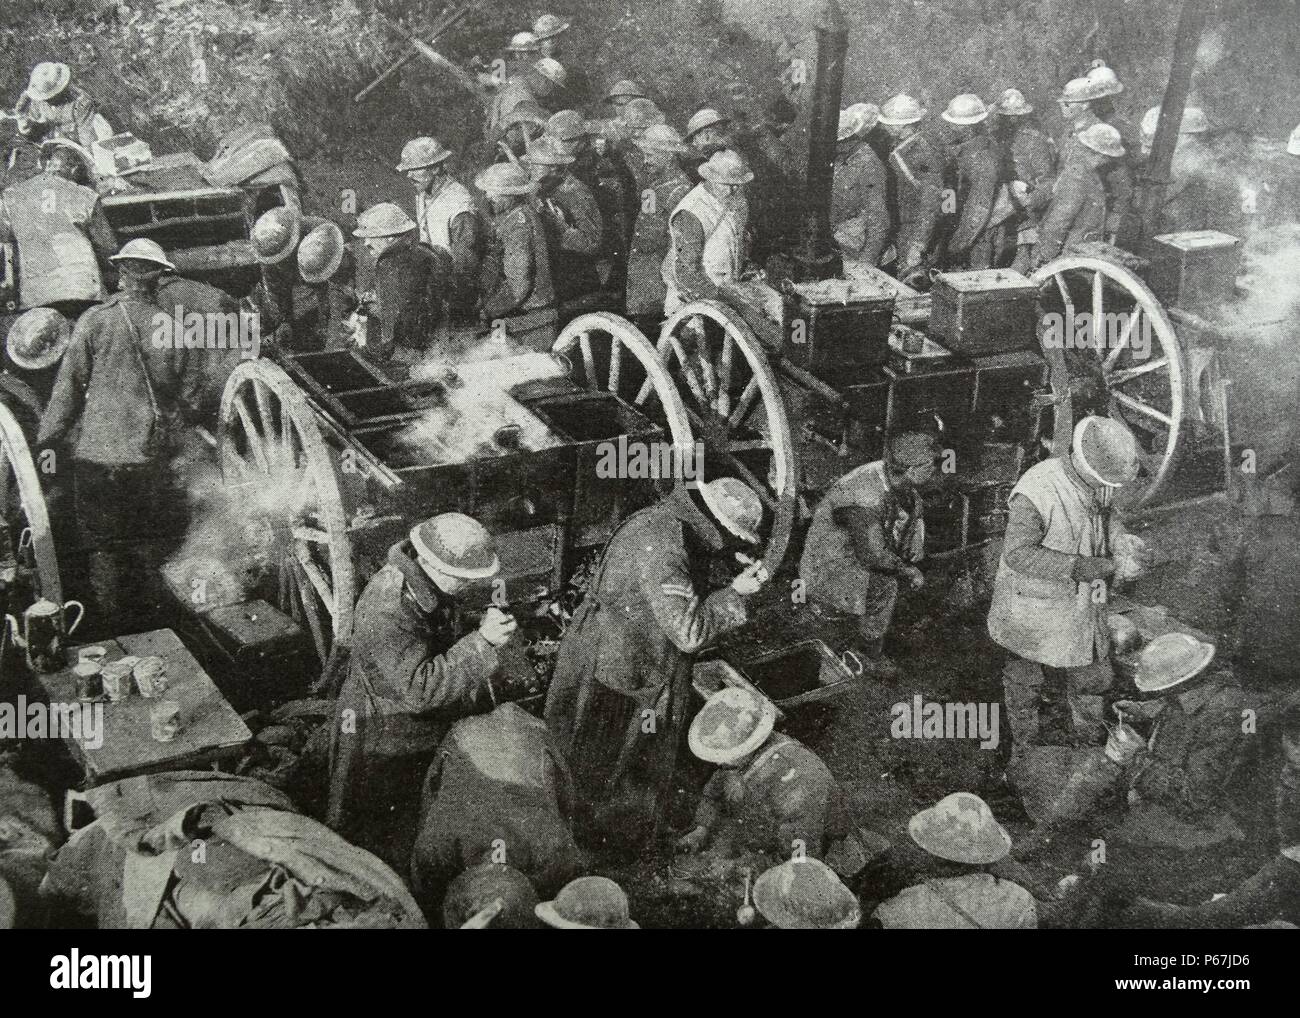 Le cap Helles à Gallipoli au début de 1915. Campagne de la Première Guerre mondiale qui est devenu une victoire ottomane et est considérée comme un grand échec des Alliés. Banque D'Images